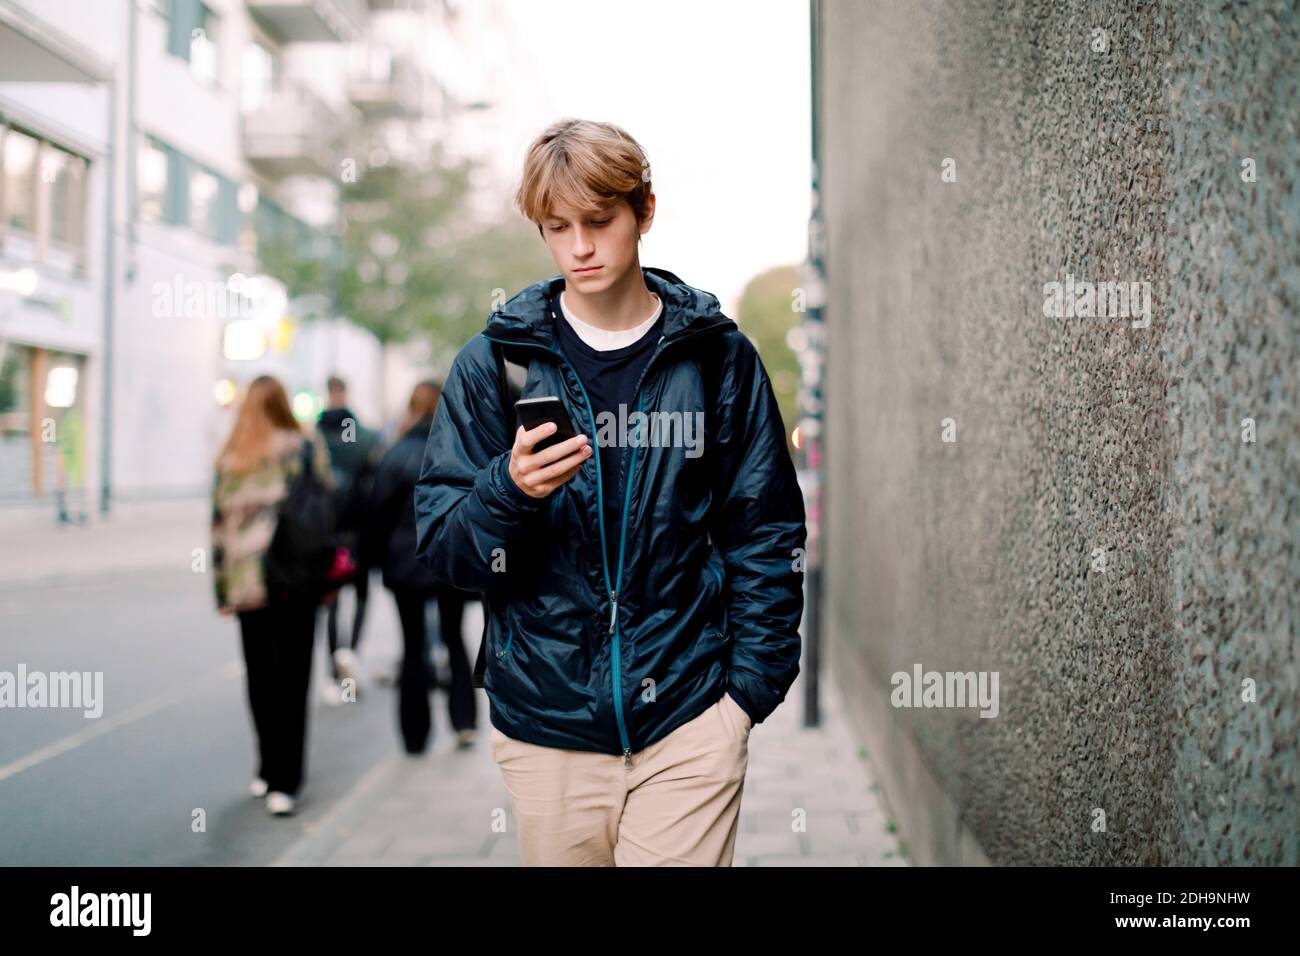 Ragazzo adolescente con capelli biondi che usa lo smartphone mentre cammina sul marciapiede contro le mura della città Foto Stock